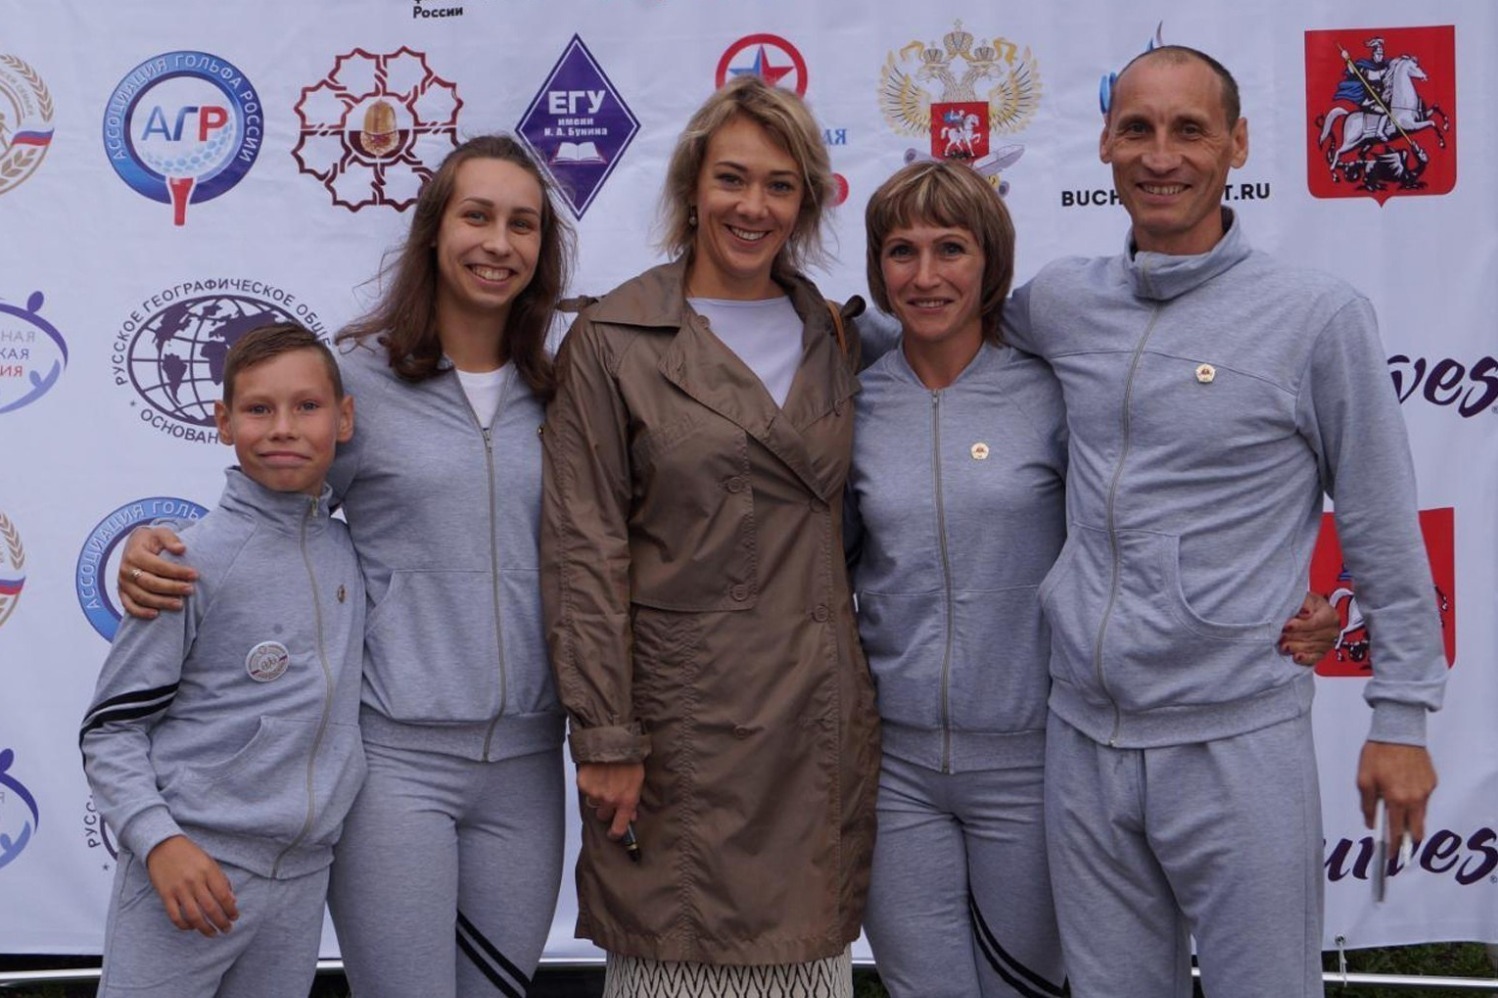 Семья Ситниковых с Олимпийской чемпионкой по биатлону Ольгой Зайцевой на фестивале в Москве, 2017 год